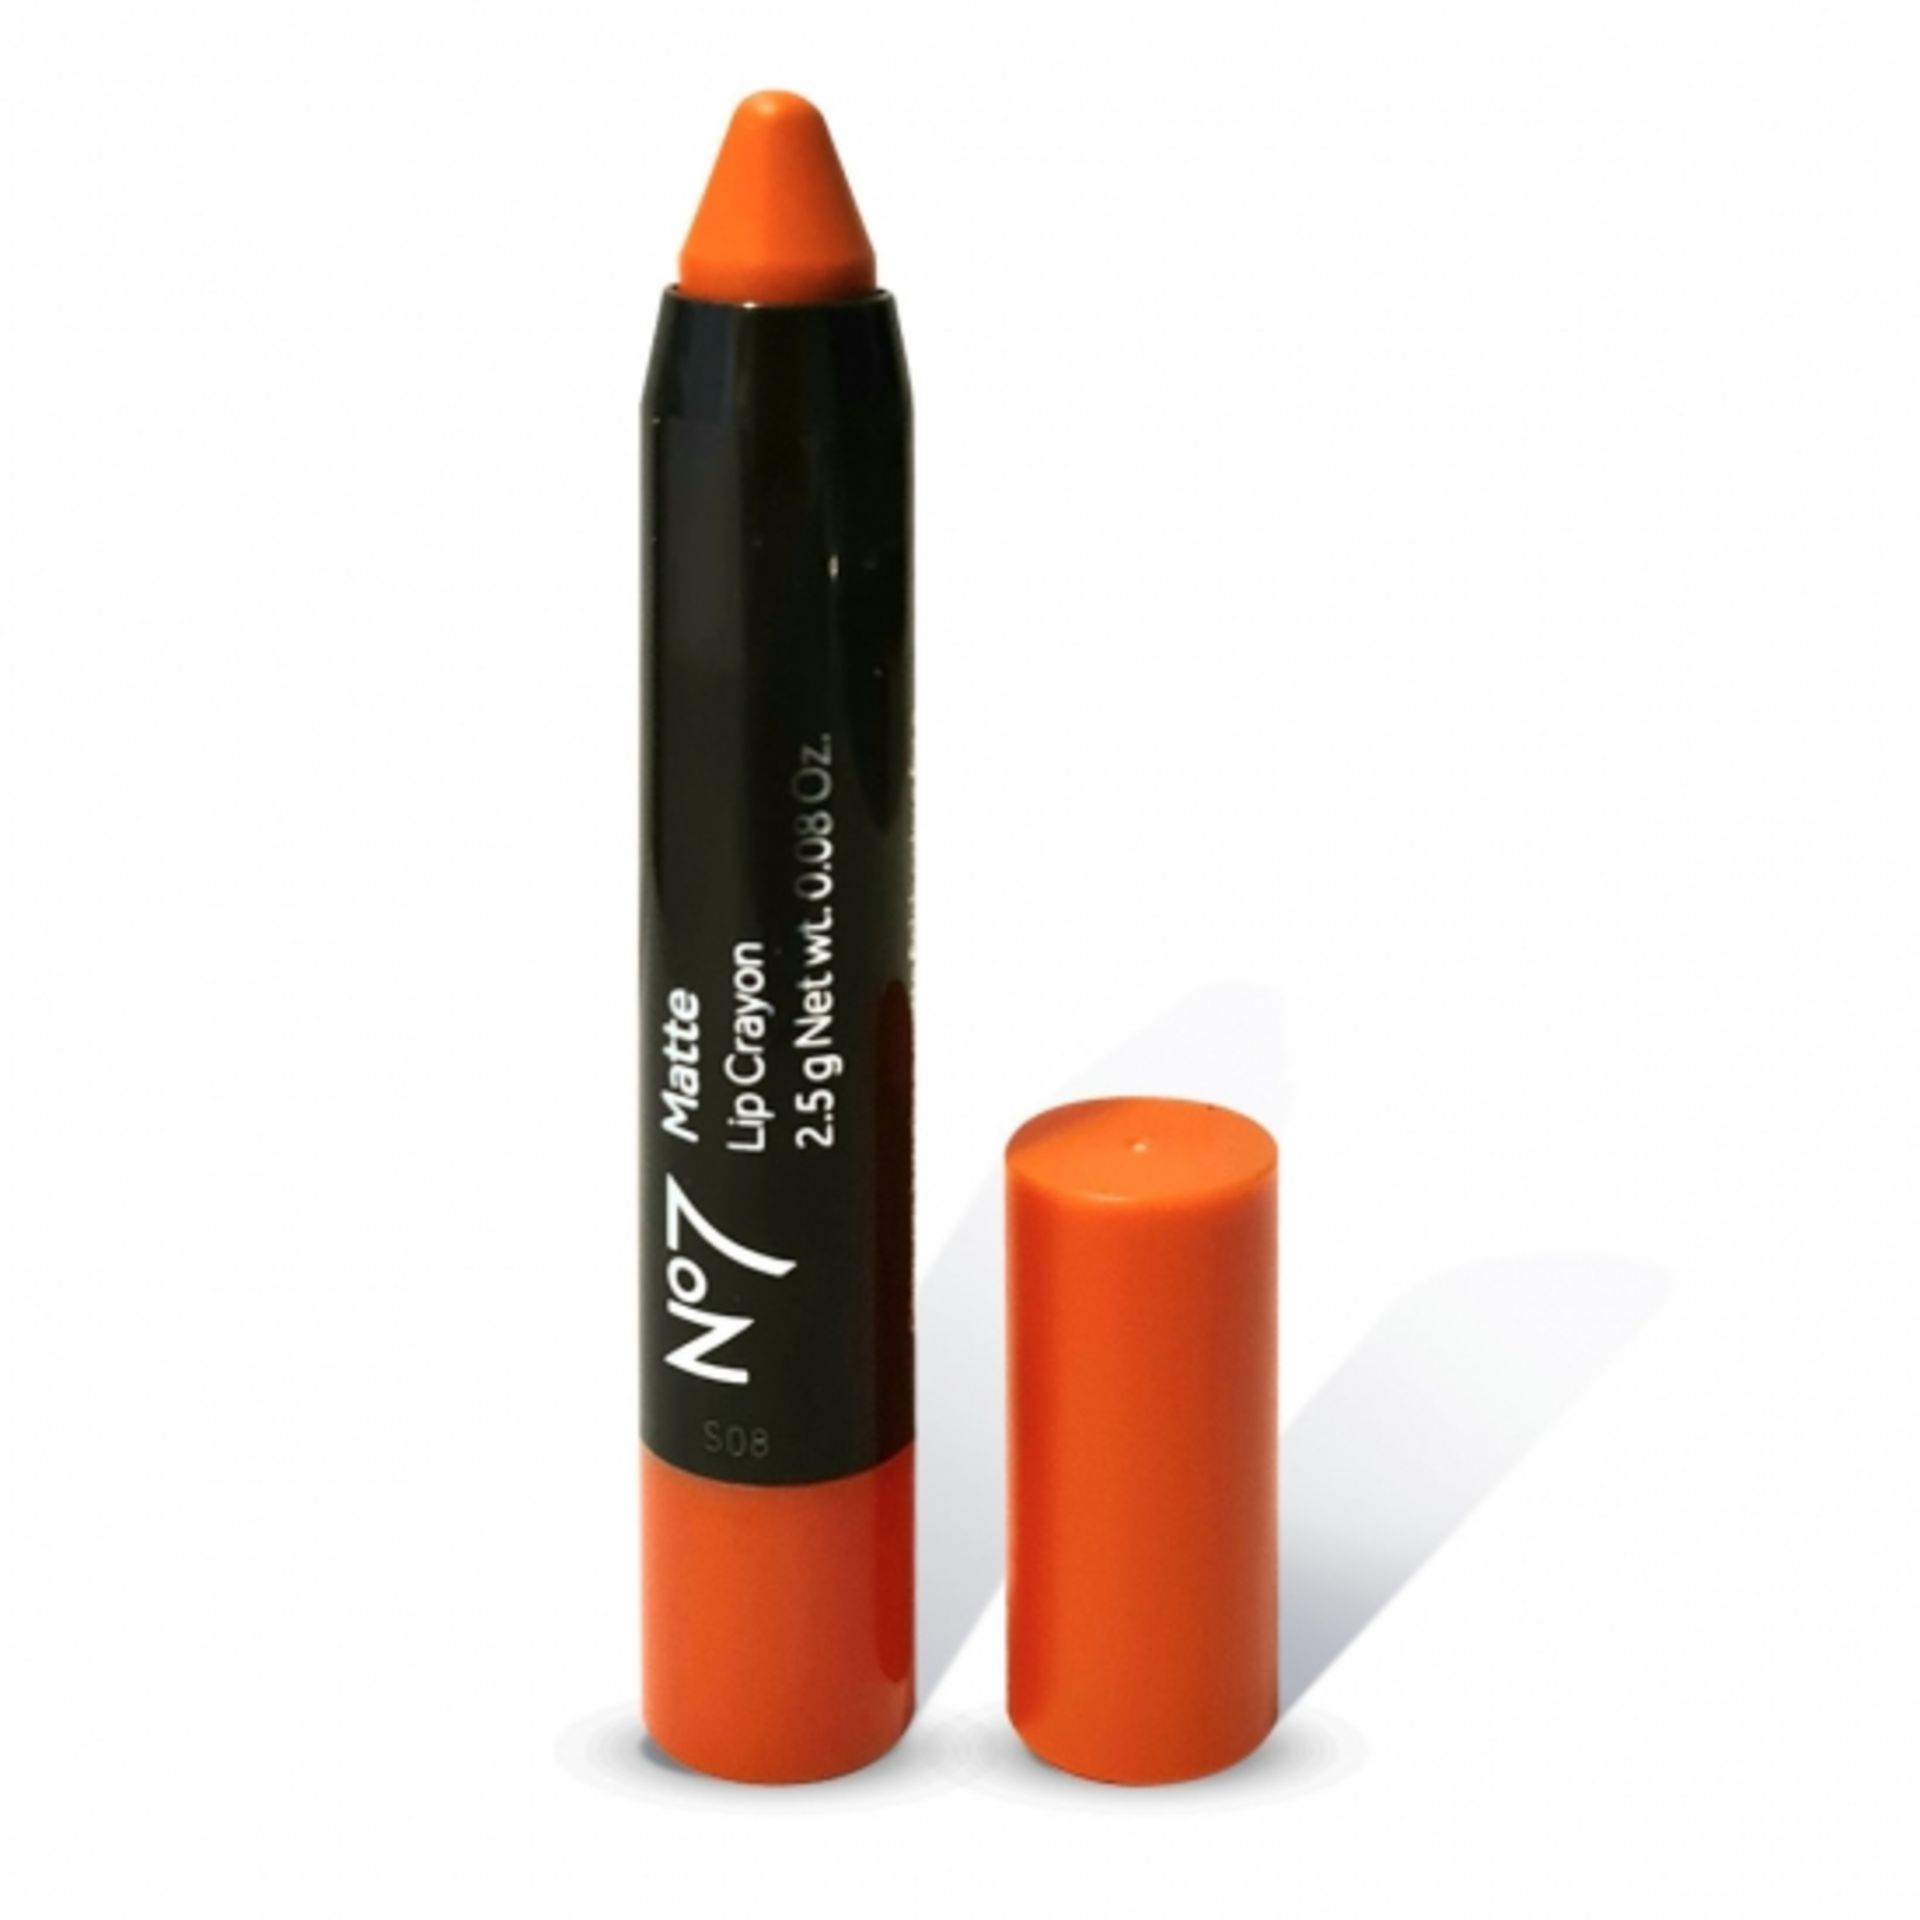 20 x NO7 Lip Crayon Blazing Coral Shade - Image 2 of 2